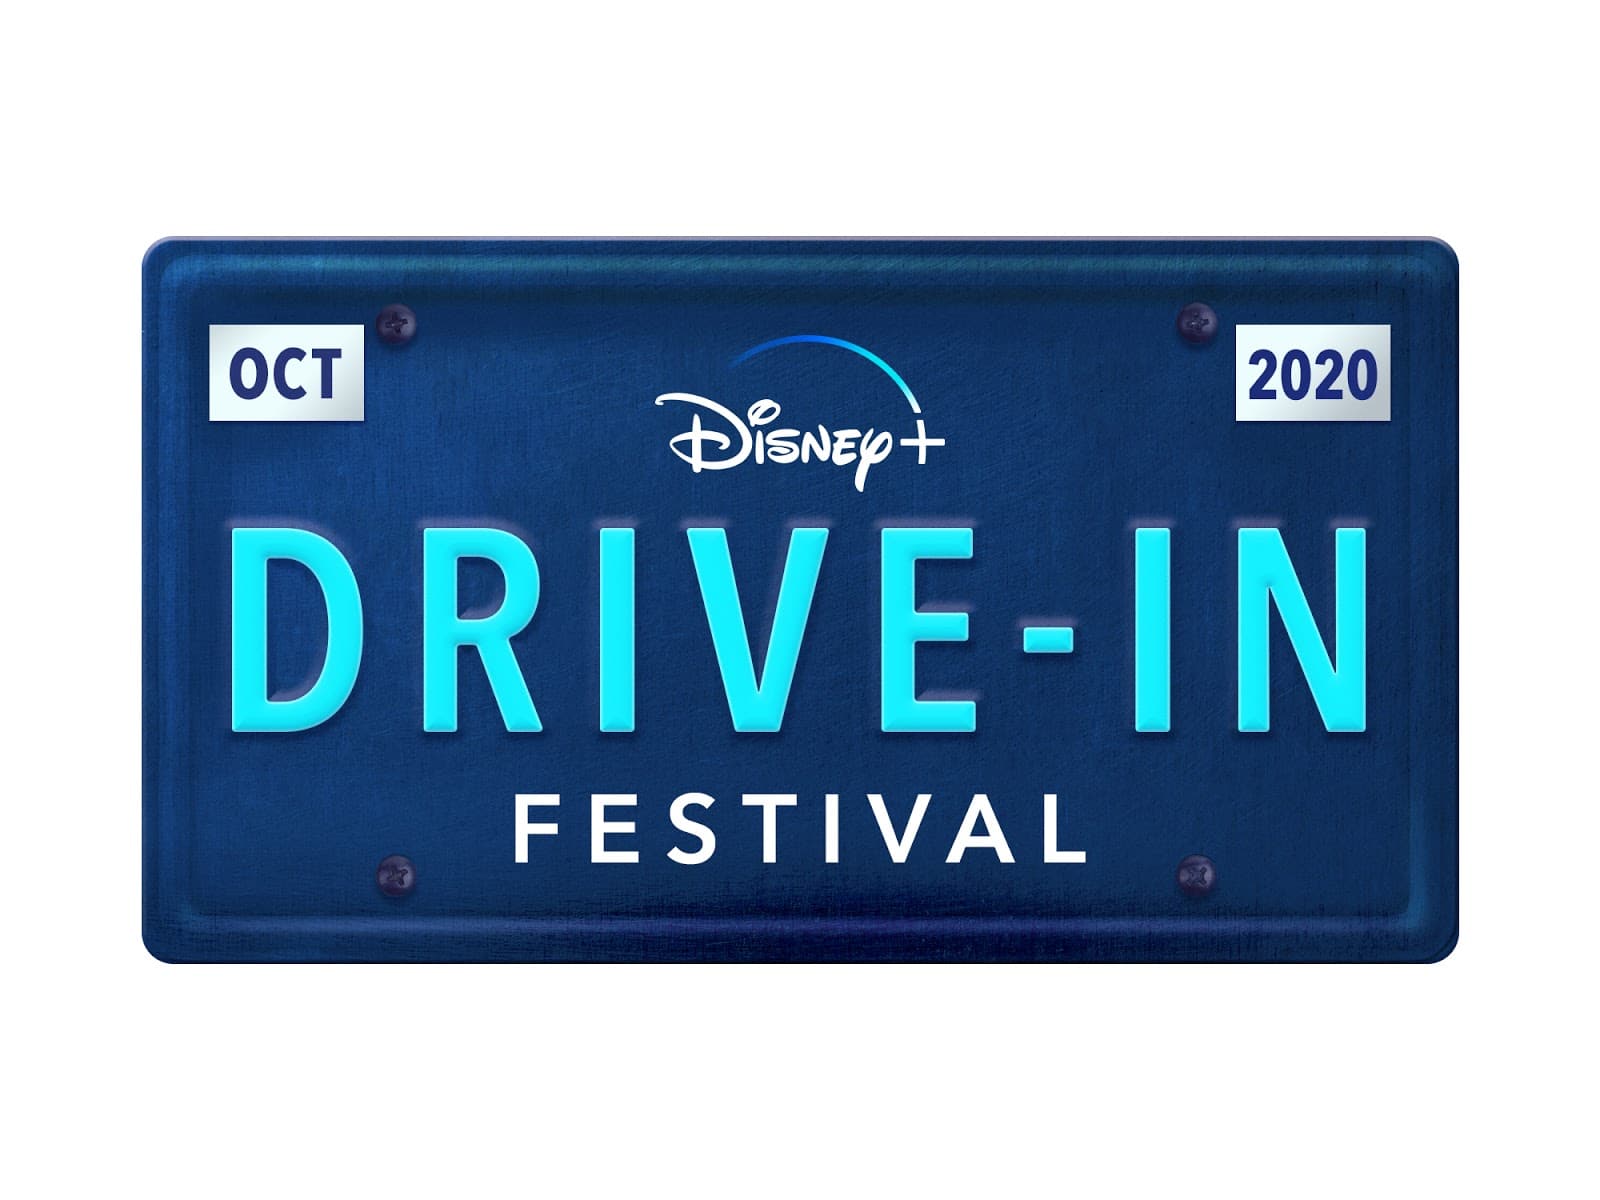 Disney+ Drive-In Festival Coming to Santa Monica, California in October